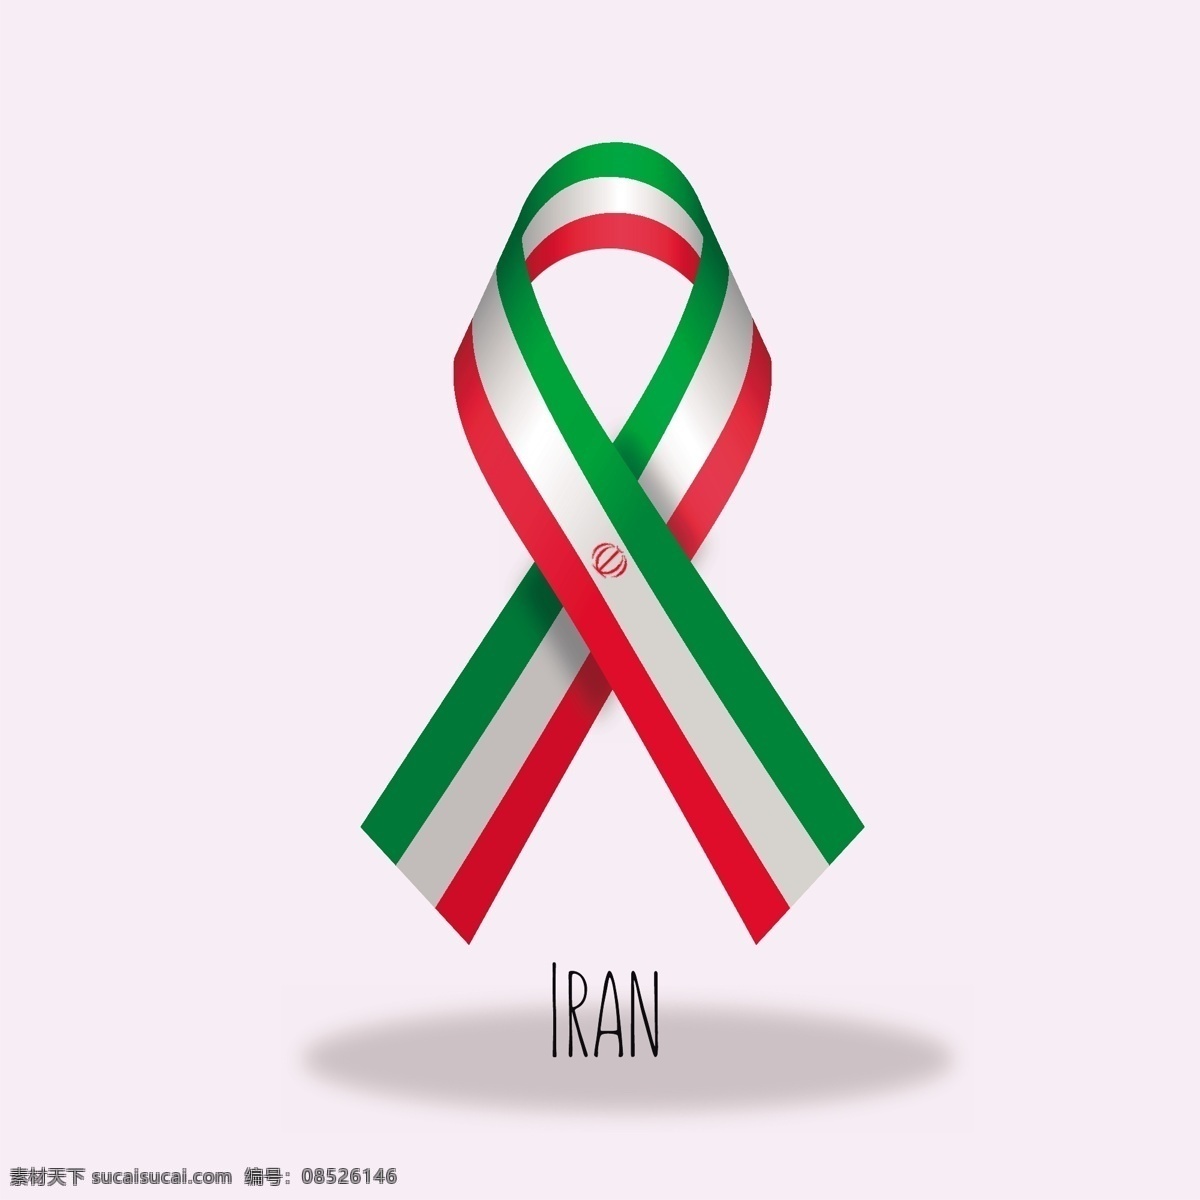 伊朗旗带设计 采购产品旗帜 缎带 旗帜 横幅 标志 装饰 缎带横幅 颜色 身份 国家 政府 国旗 伊朗 爱国